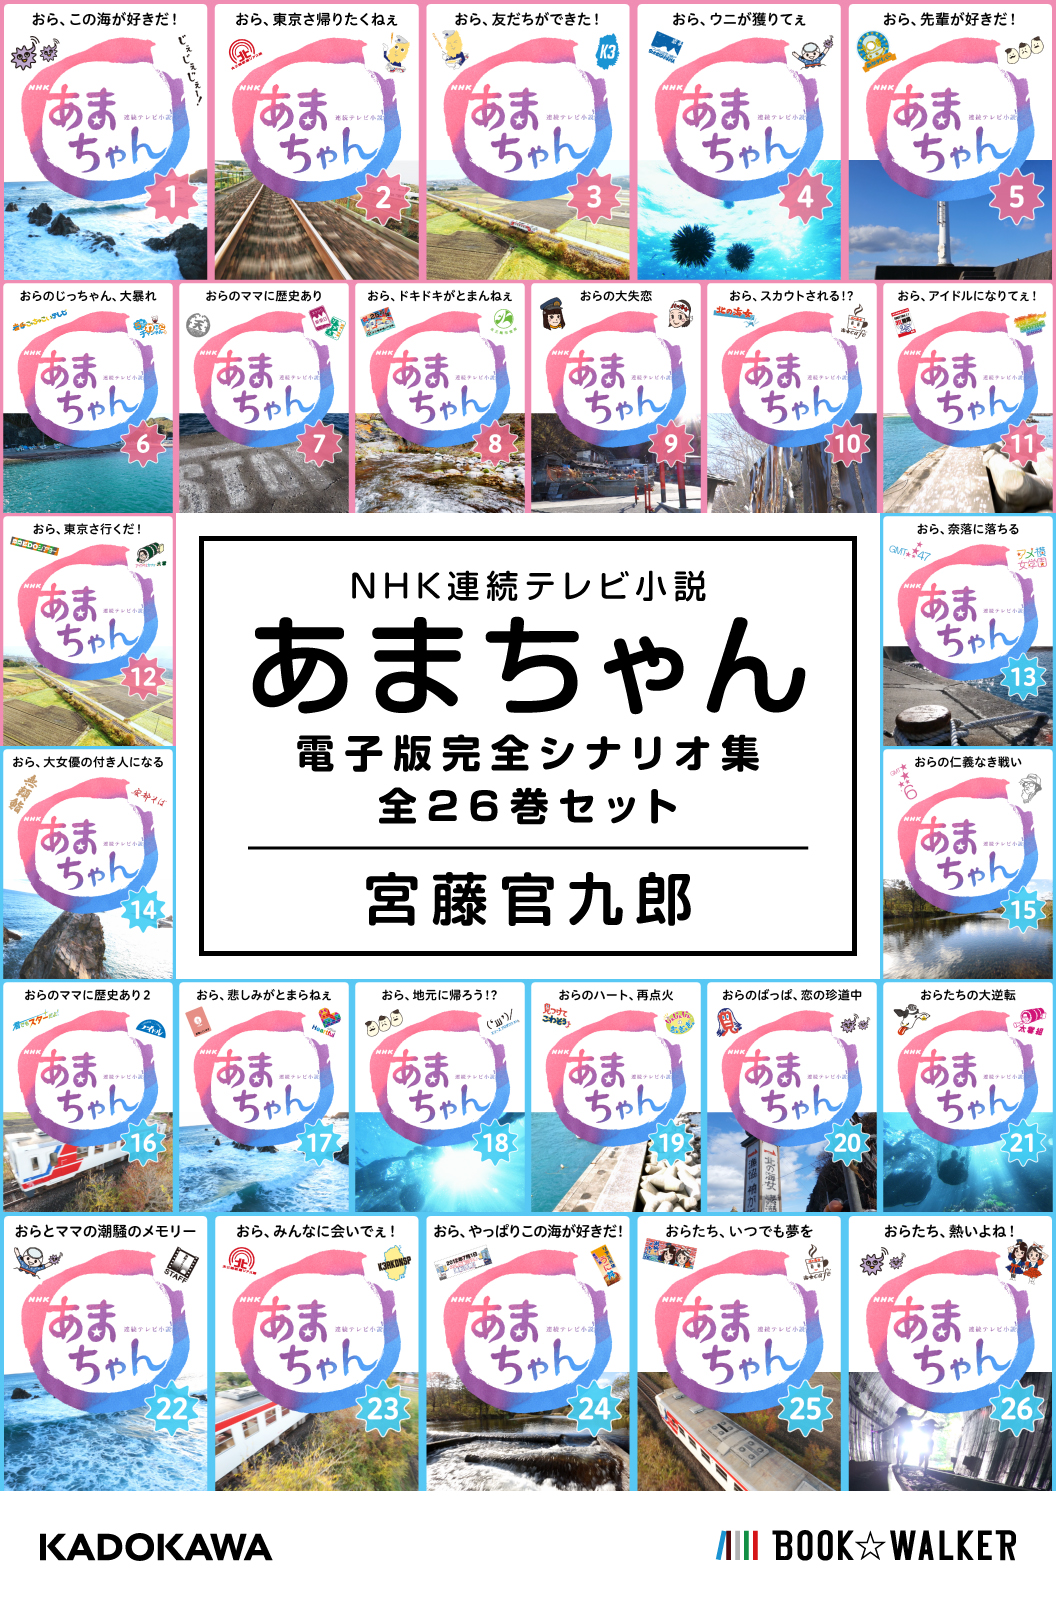 NHK連続テレビ小説 あまちゃん 電子版完全シナリオ集 全26巻